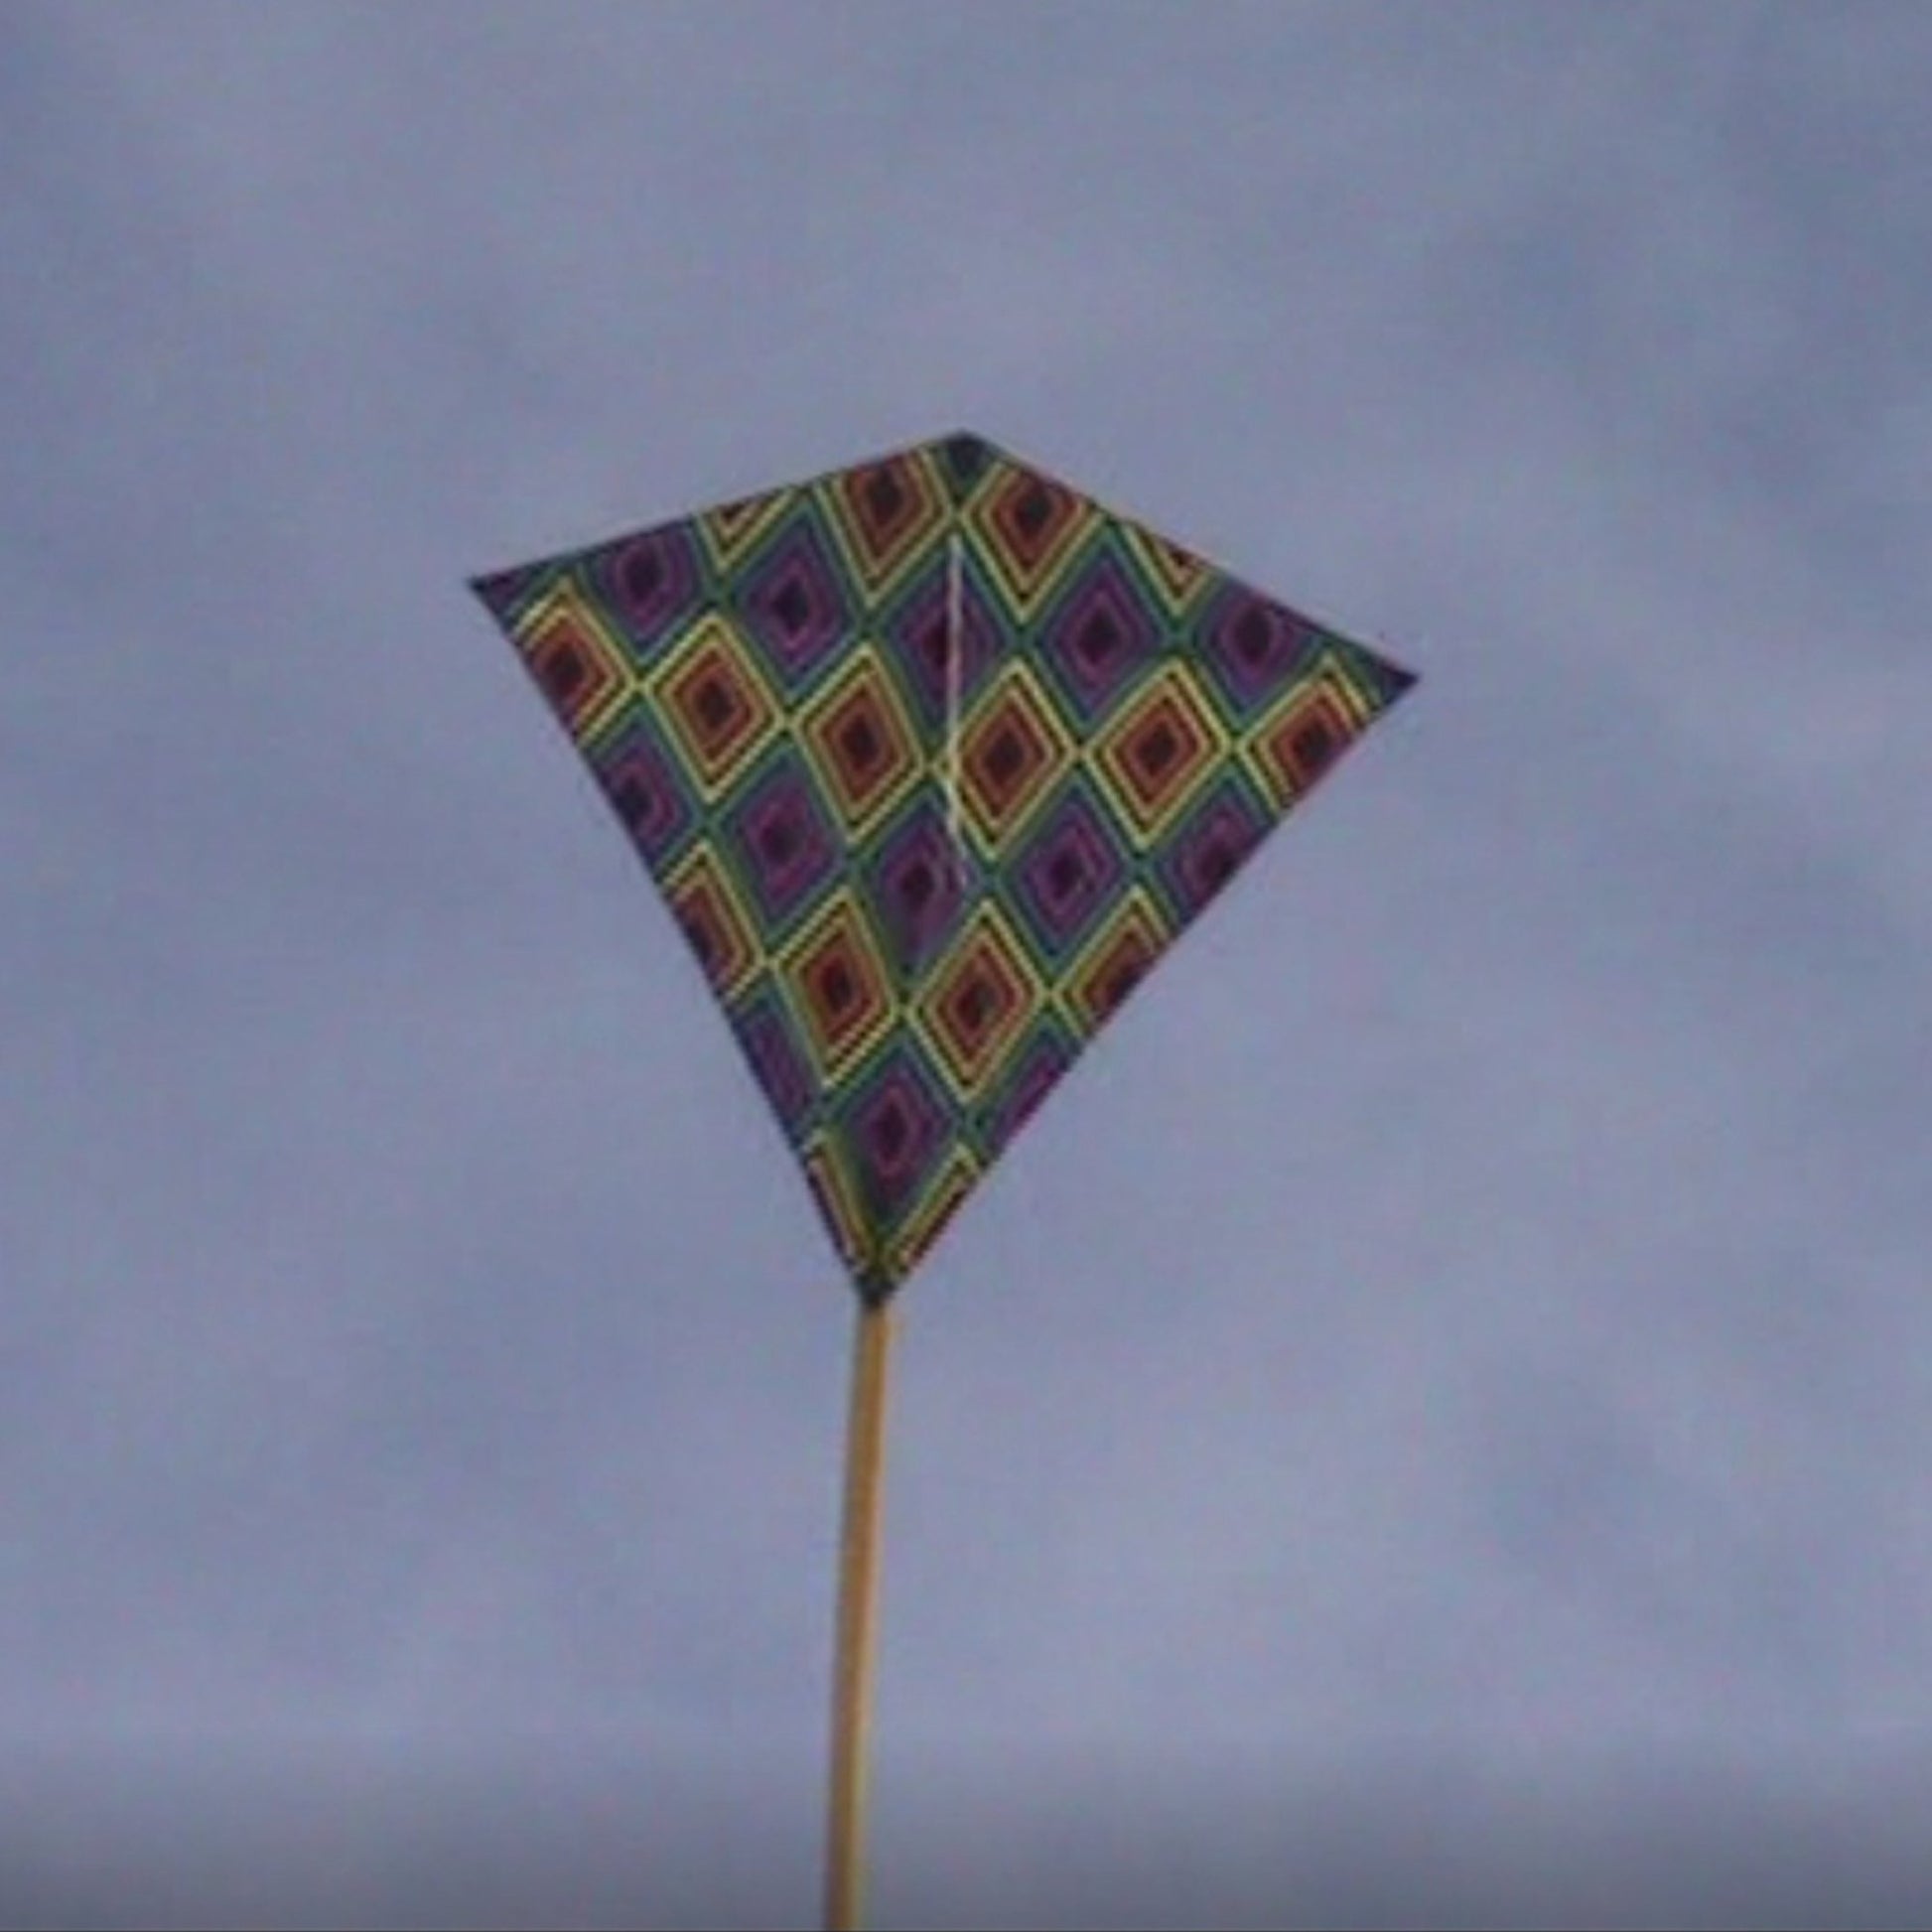 windnsun winddiamond infinity nylon kite flying